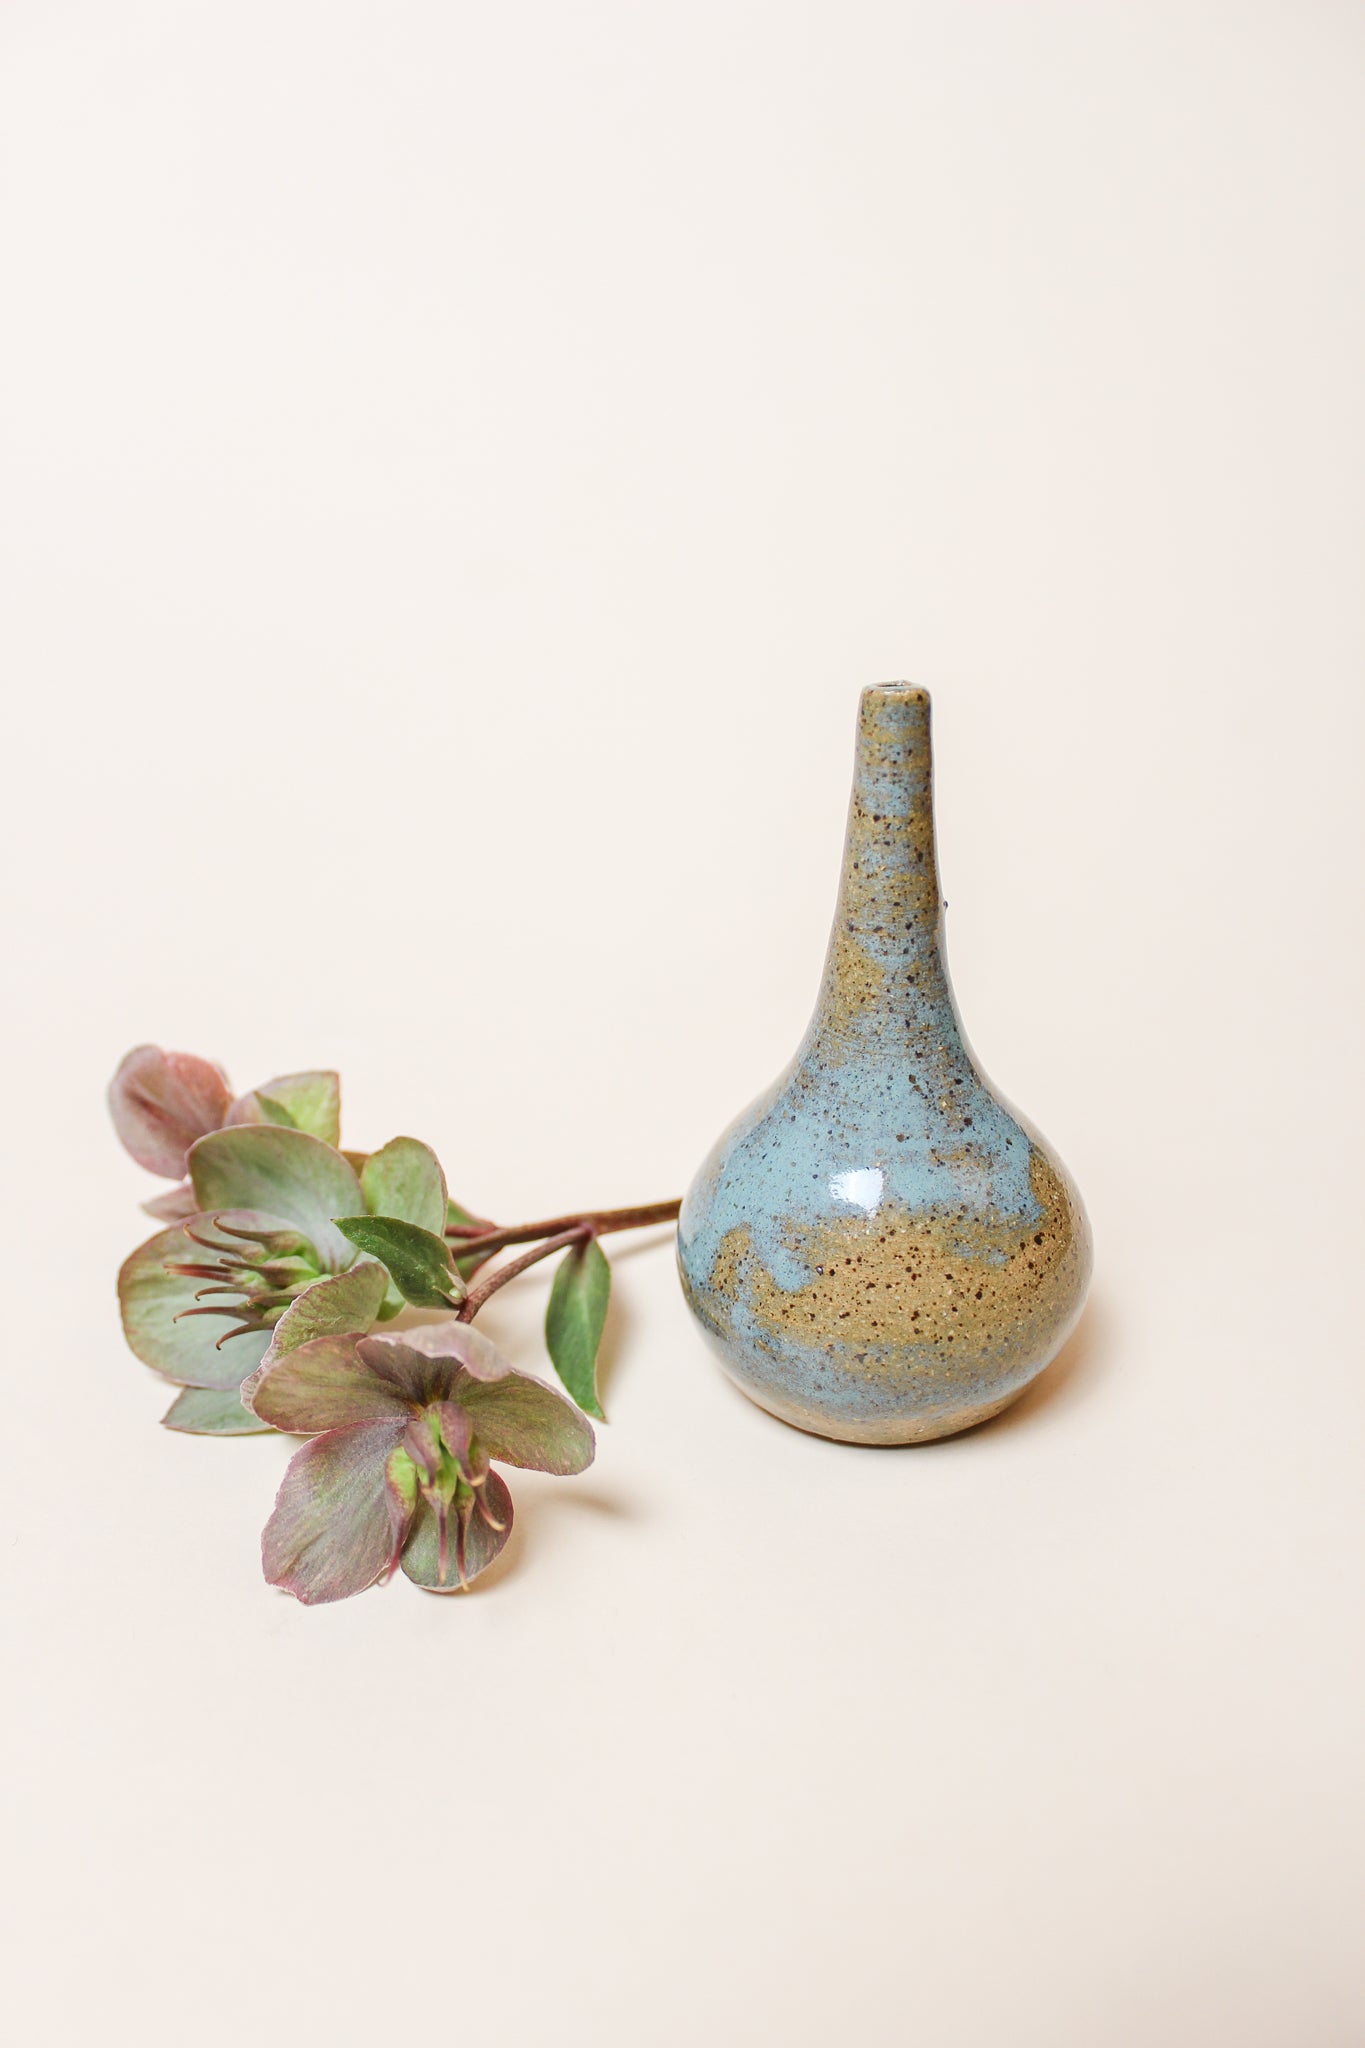 Ceramic Bud Vase Arrangements – Native Poppy